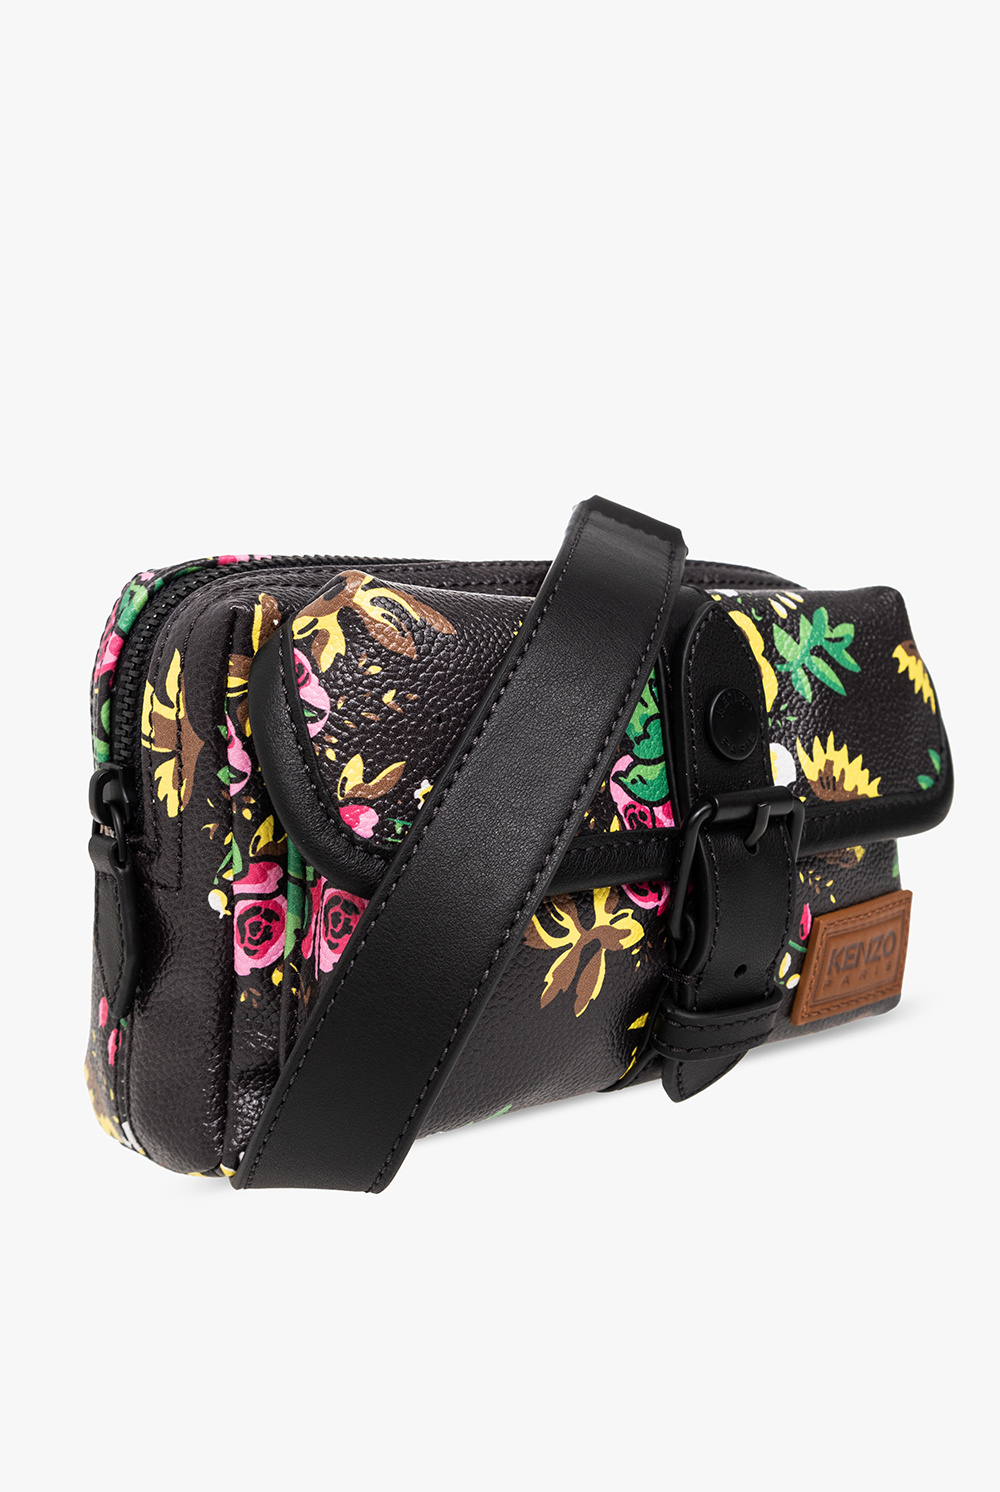 Kenzo Shoulder bag appliqu with floral motif